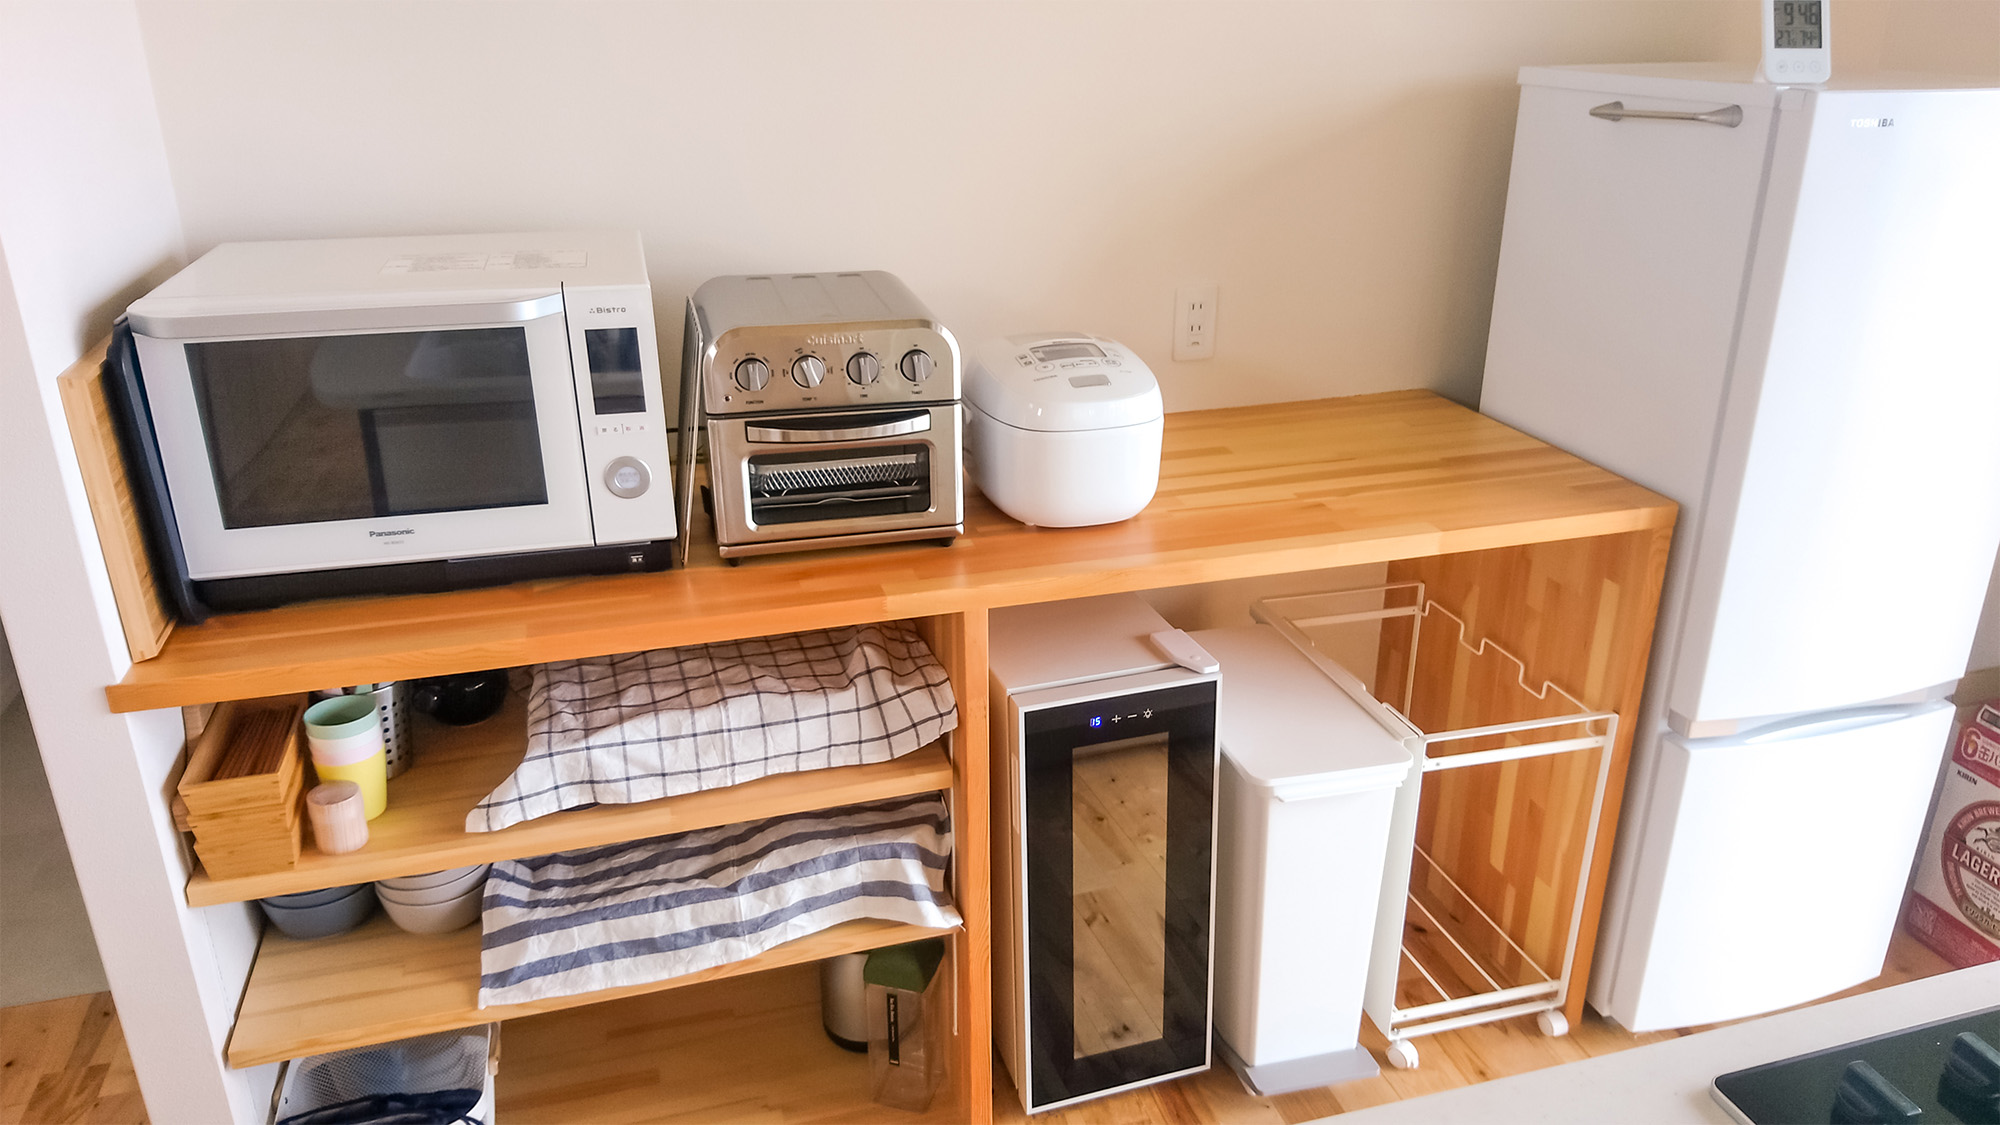 ・【キッチン】電子レンジ・トースター・炊飯器・冷蔵庫など完備